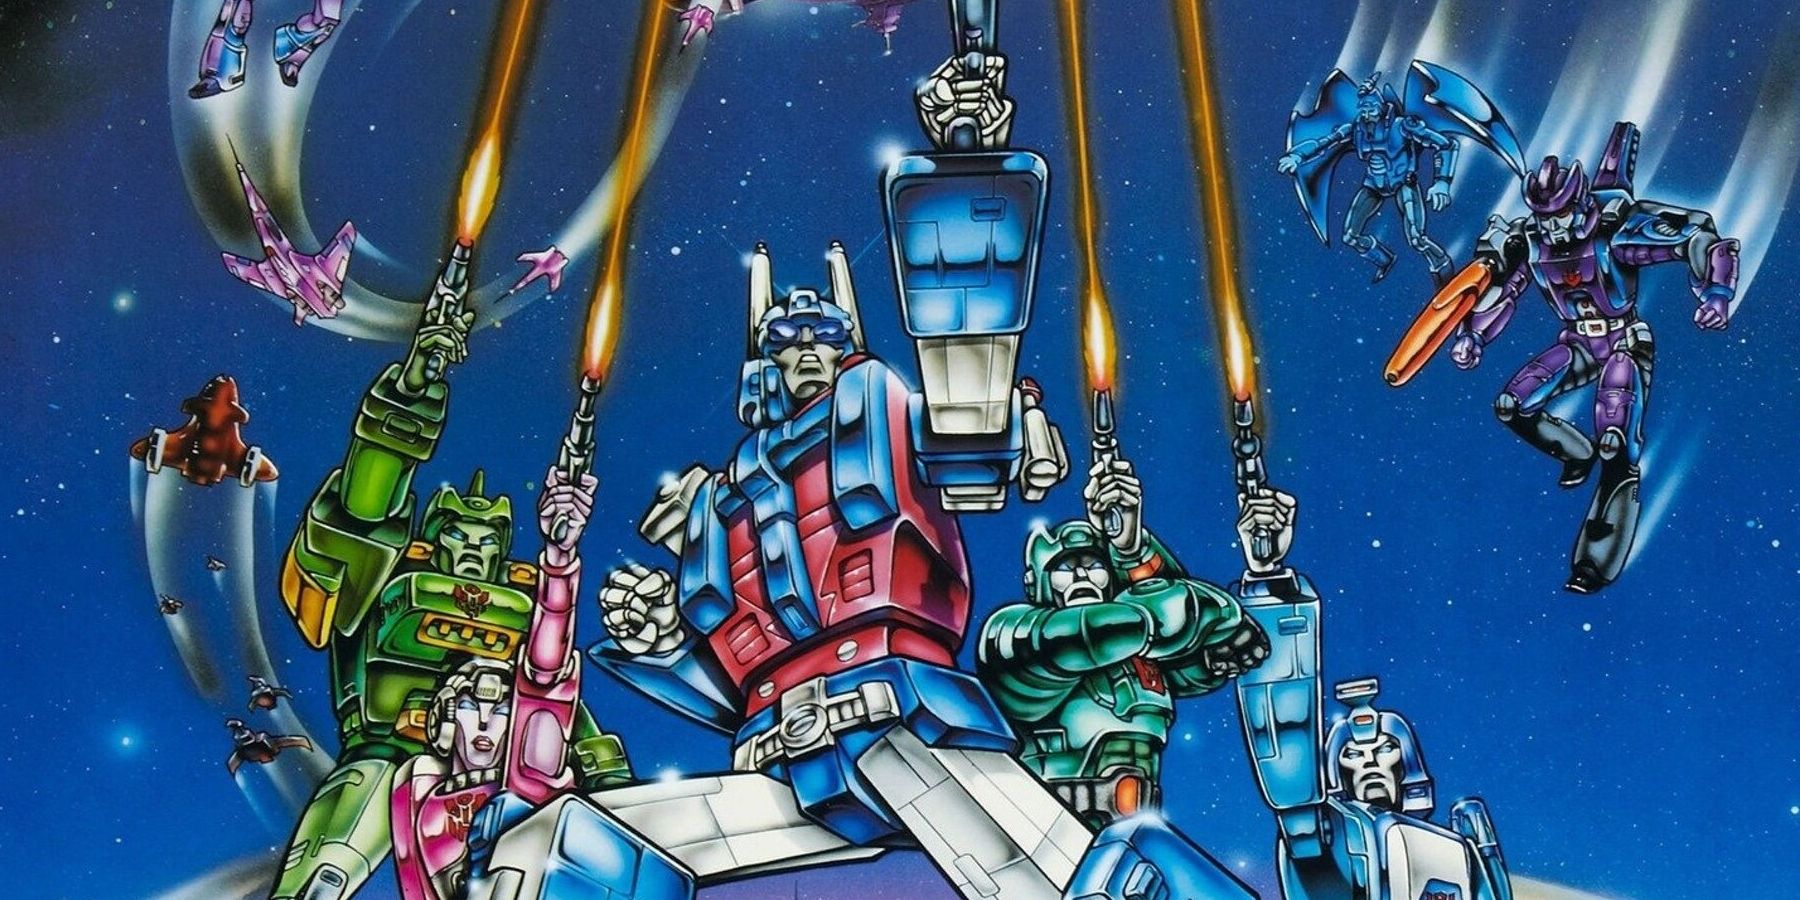 Arte del cartel de la película que muestra a Transformers disparando pistolas láser a sus enemigos arriba.